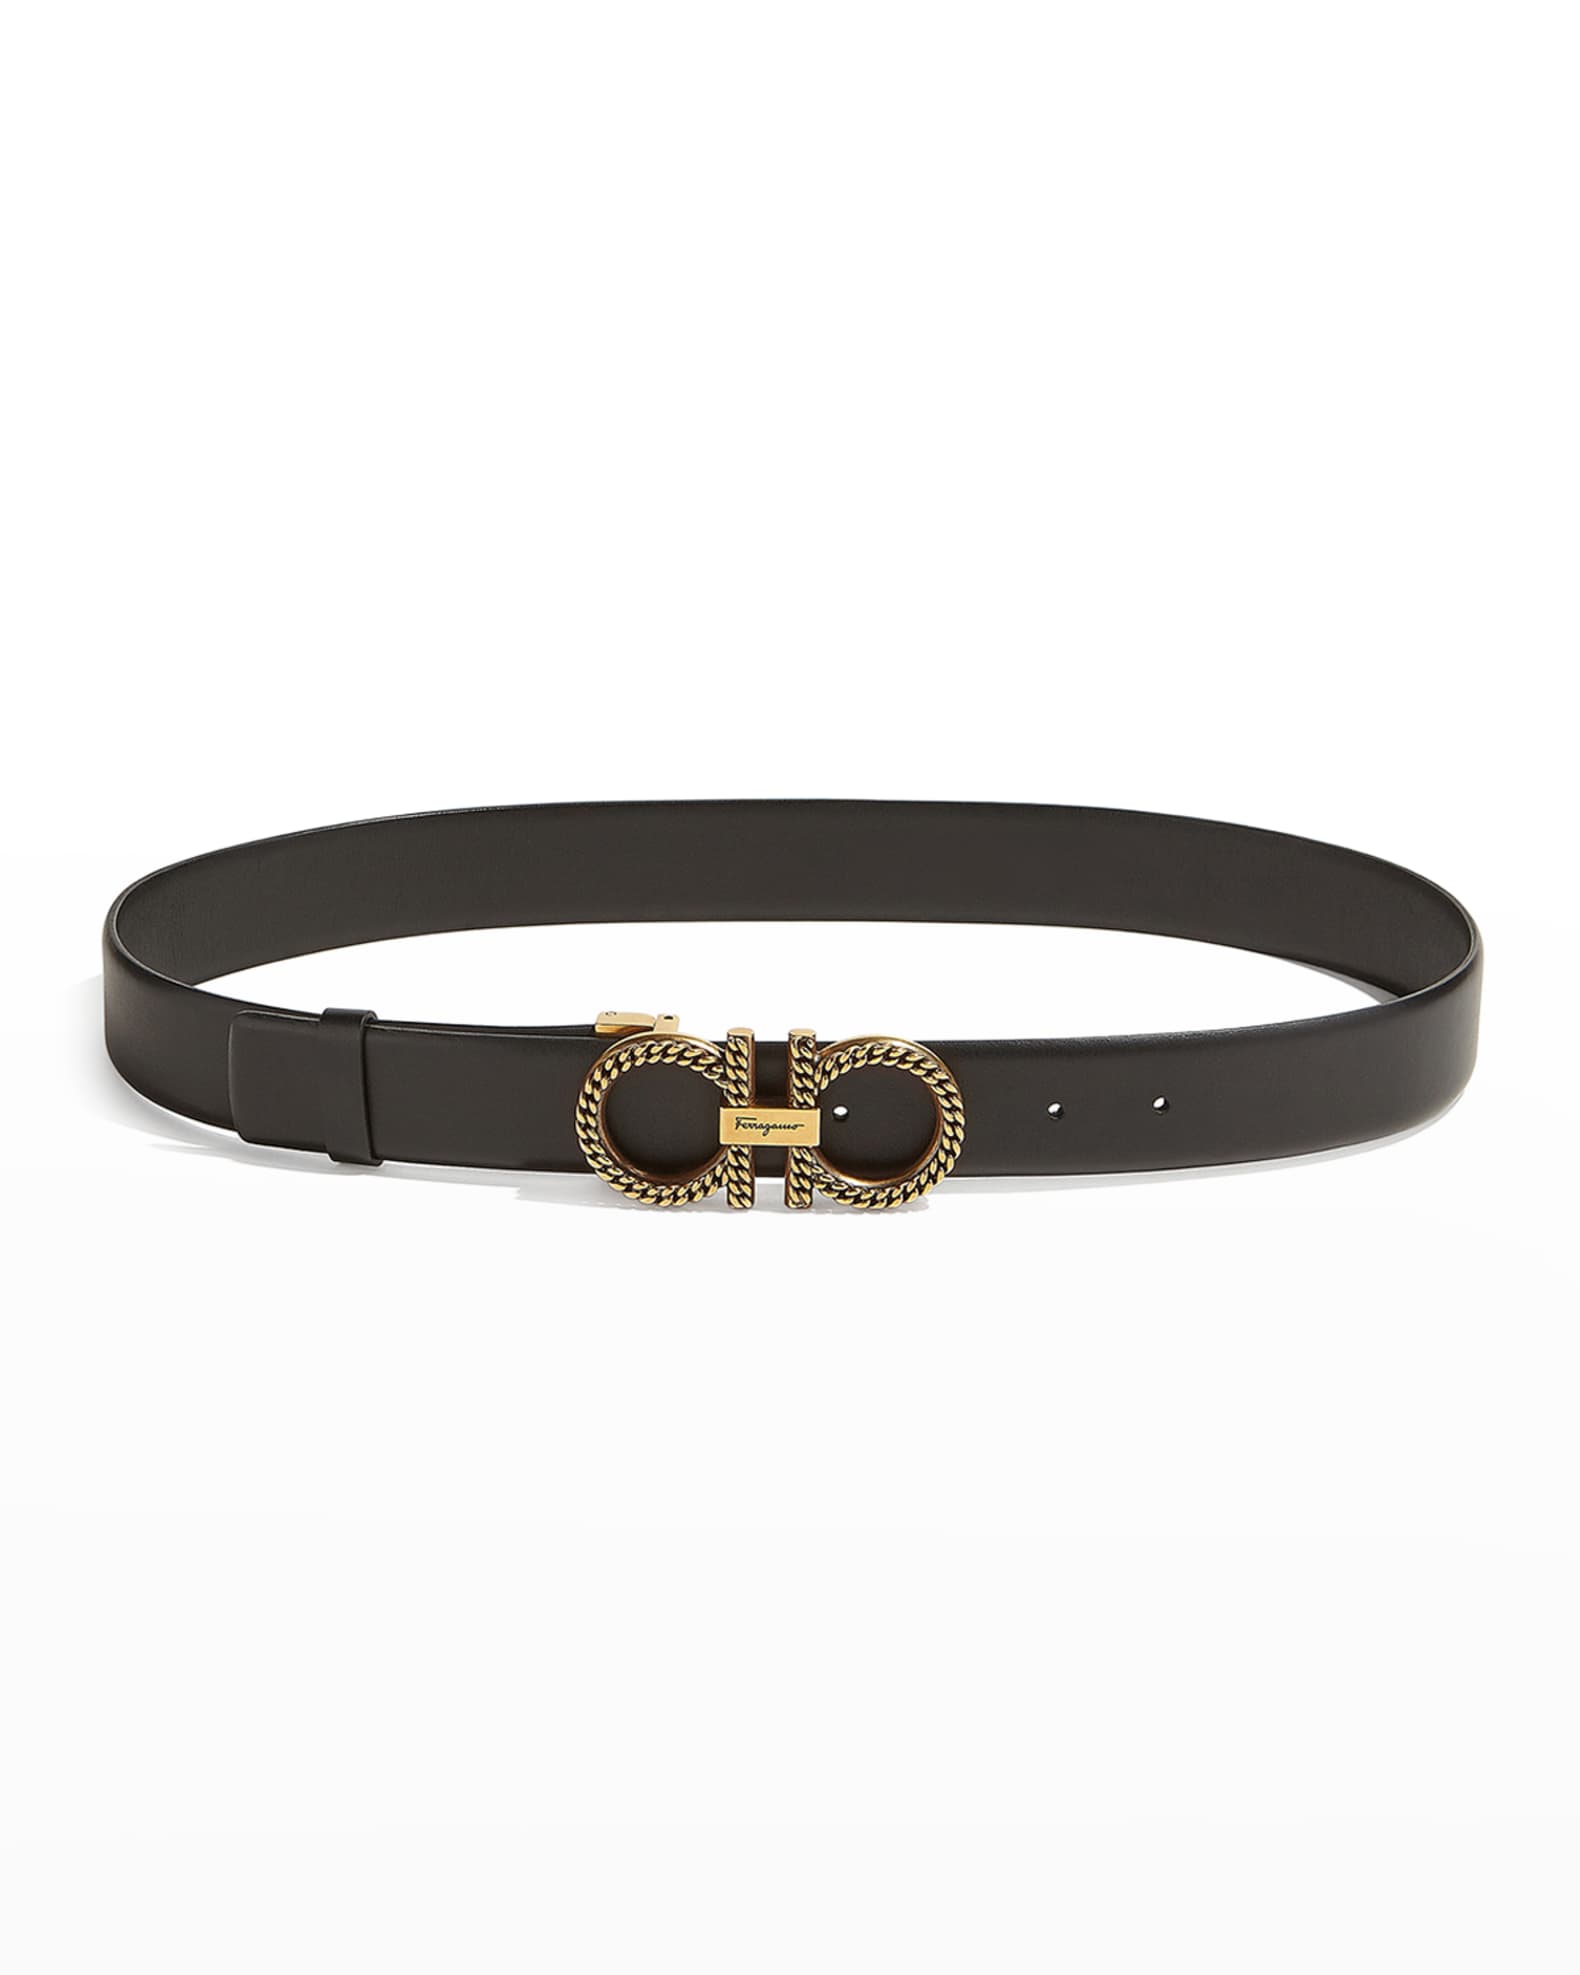 Ferragamo Chain Double-Gancini Leather Belt | Neiman Marcus